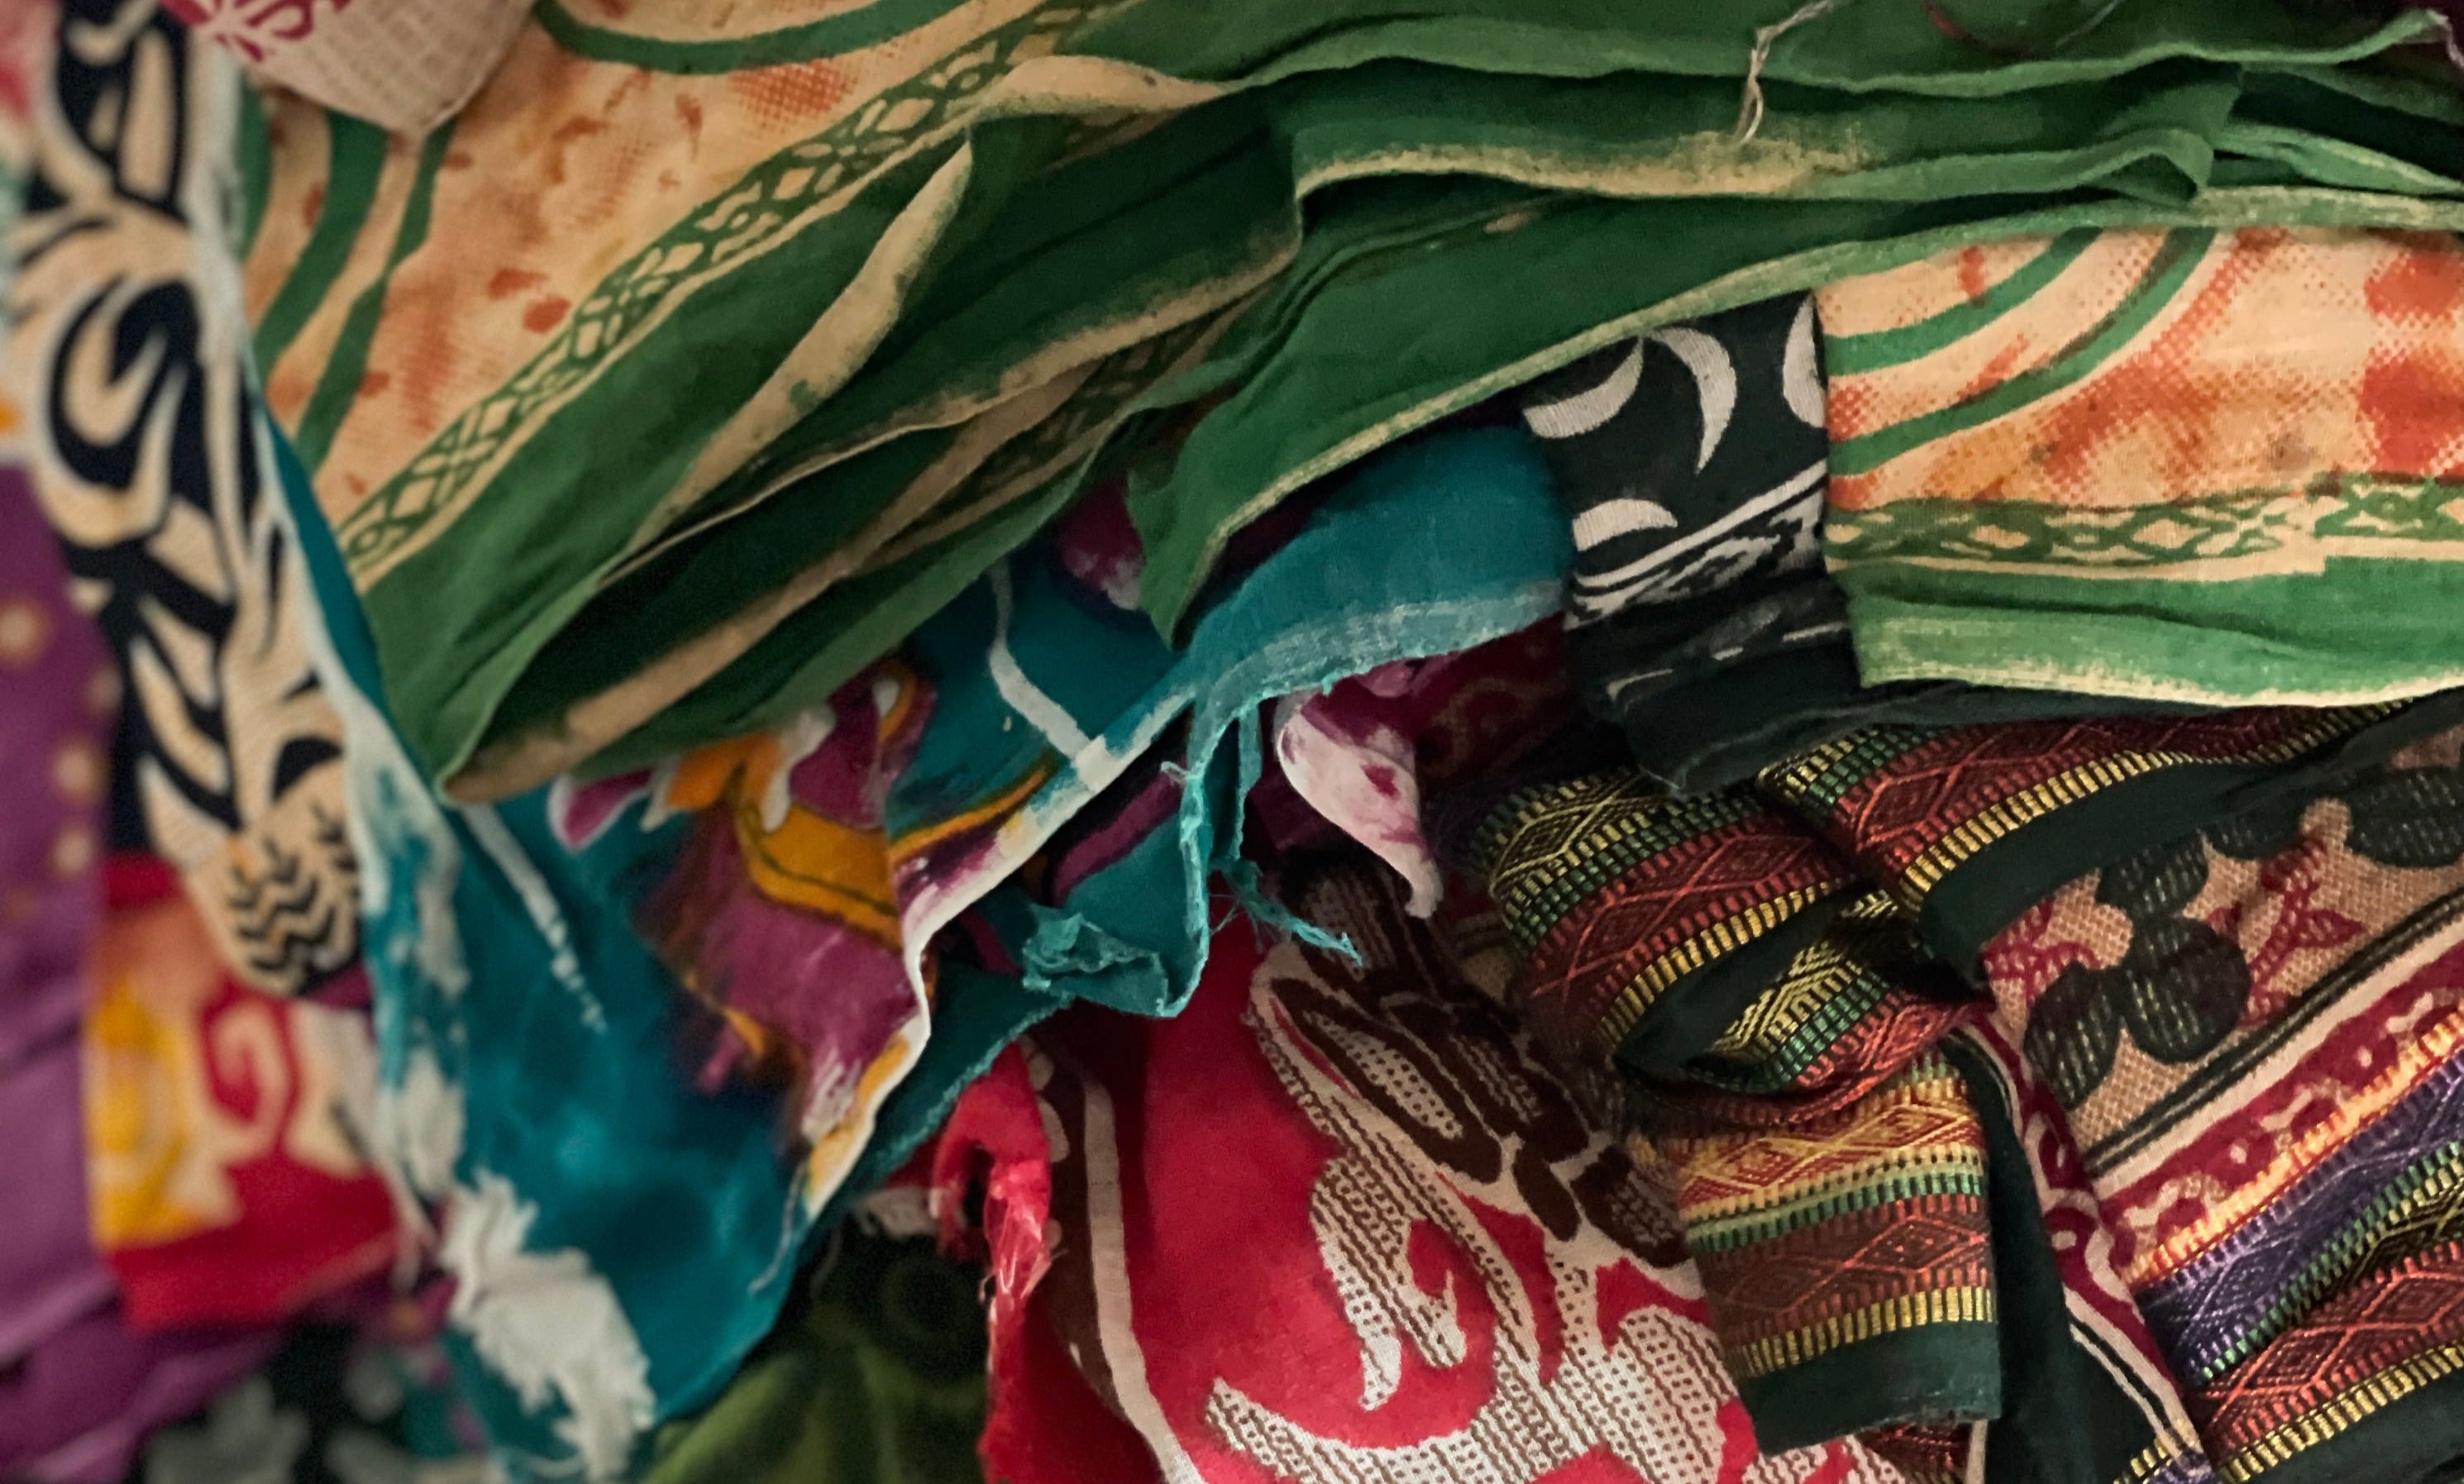 Textiles, saris a recyclé.